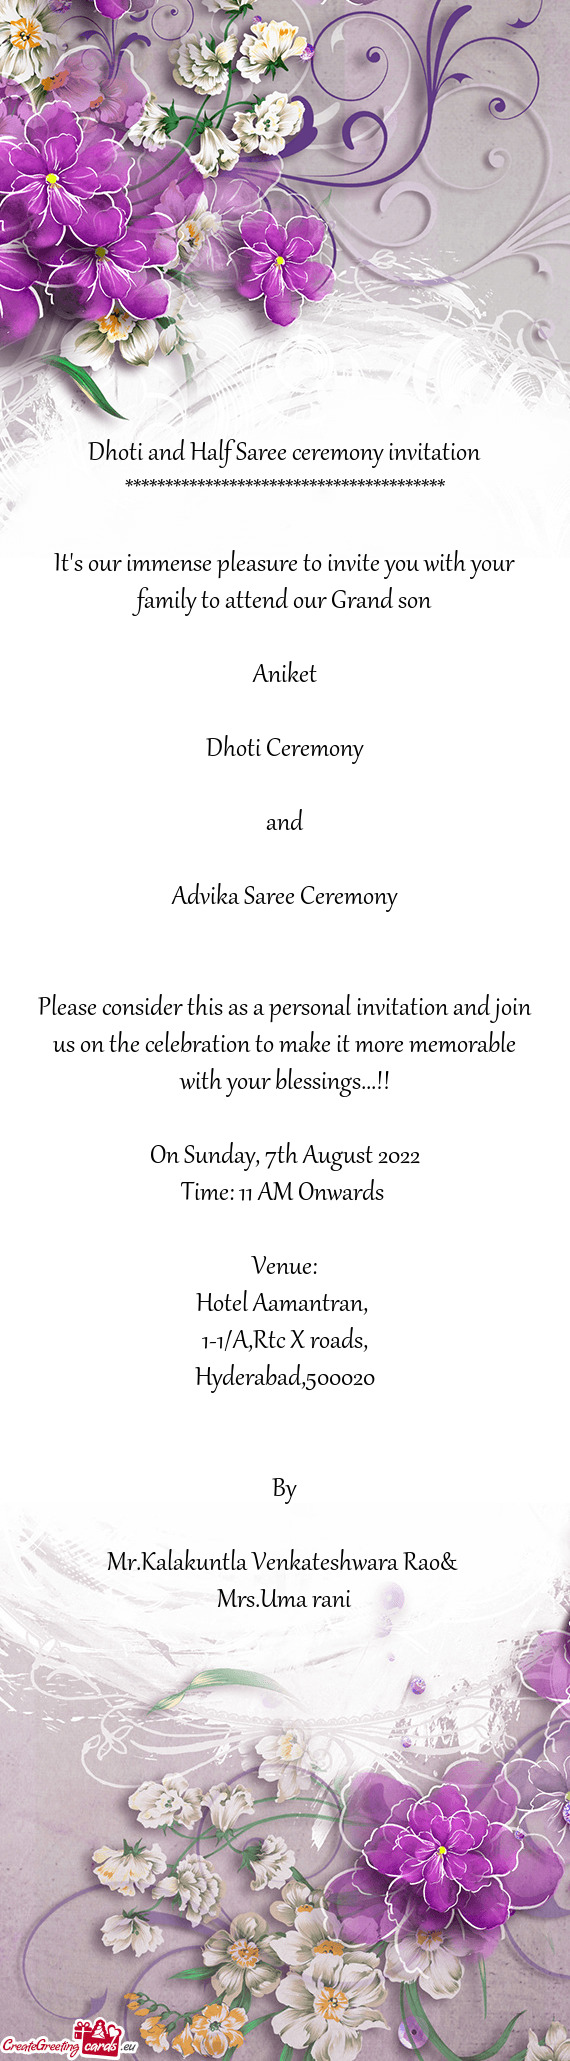 Advika Saree Ceremony